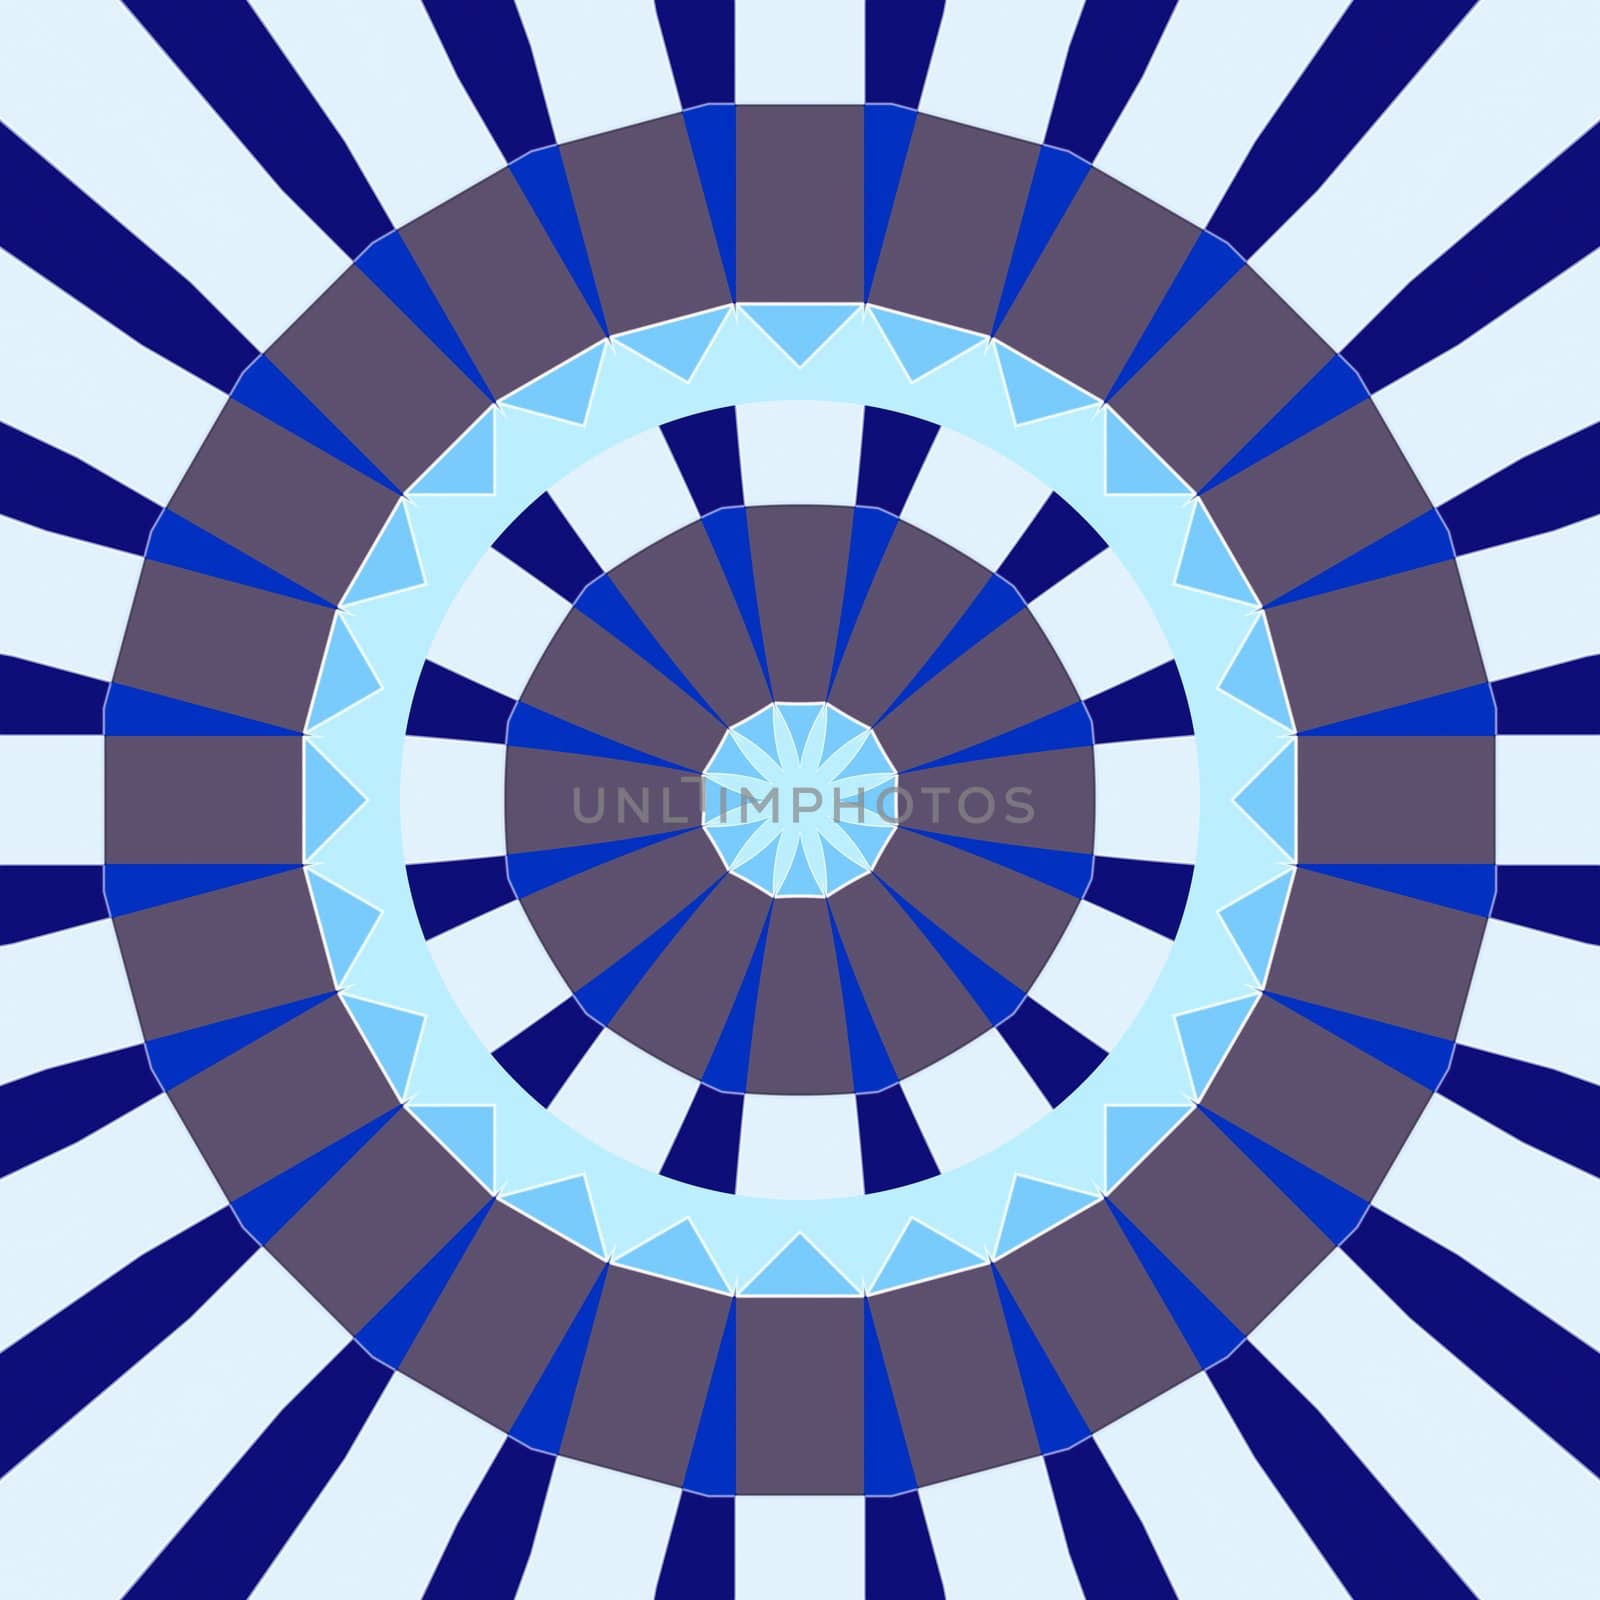 mandala like pattern of blue and grey abstract circle shapes